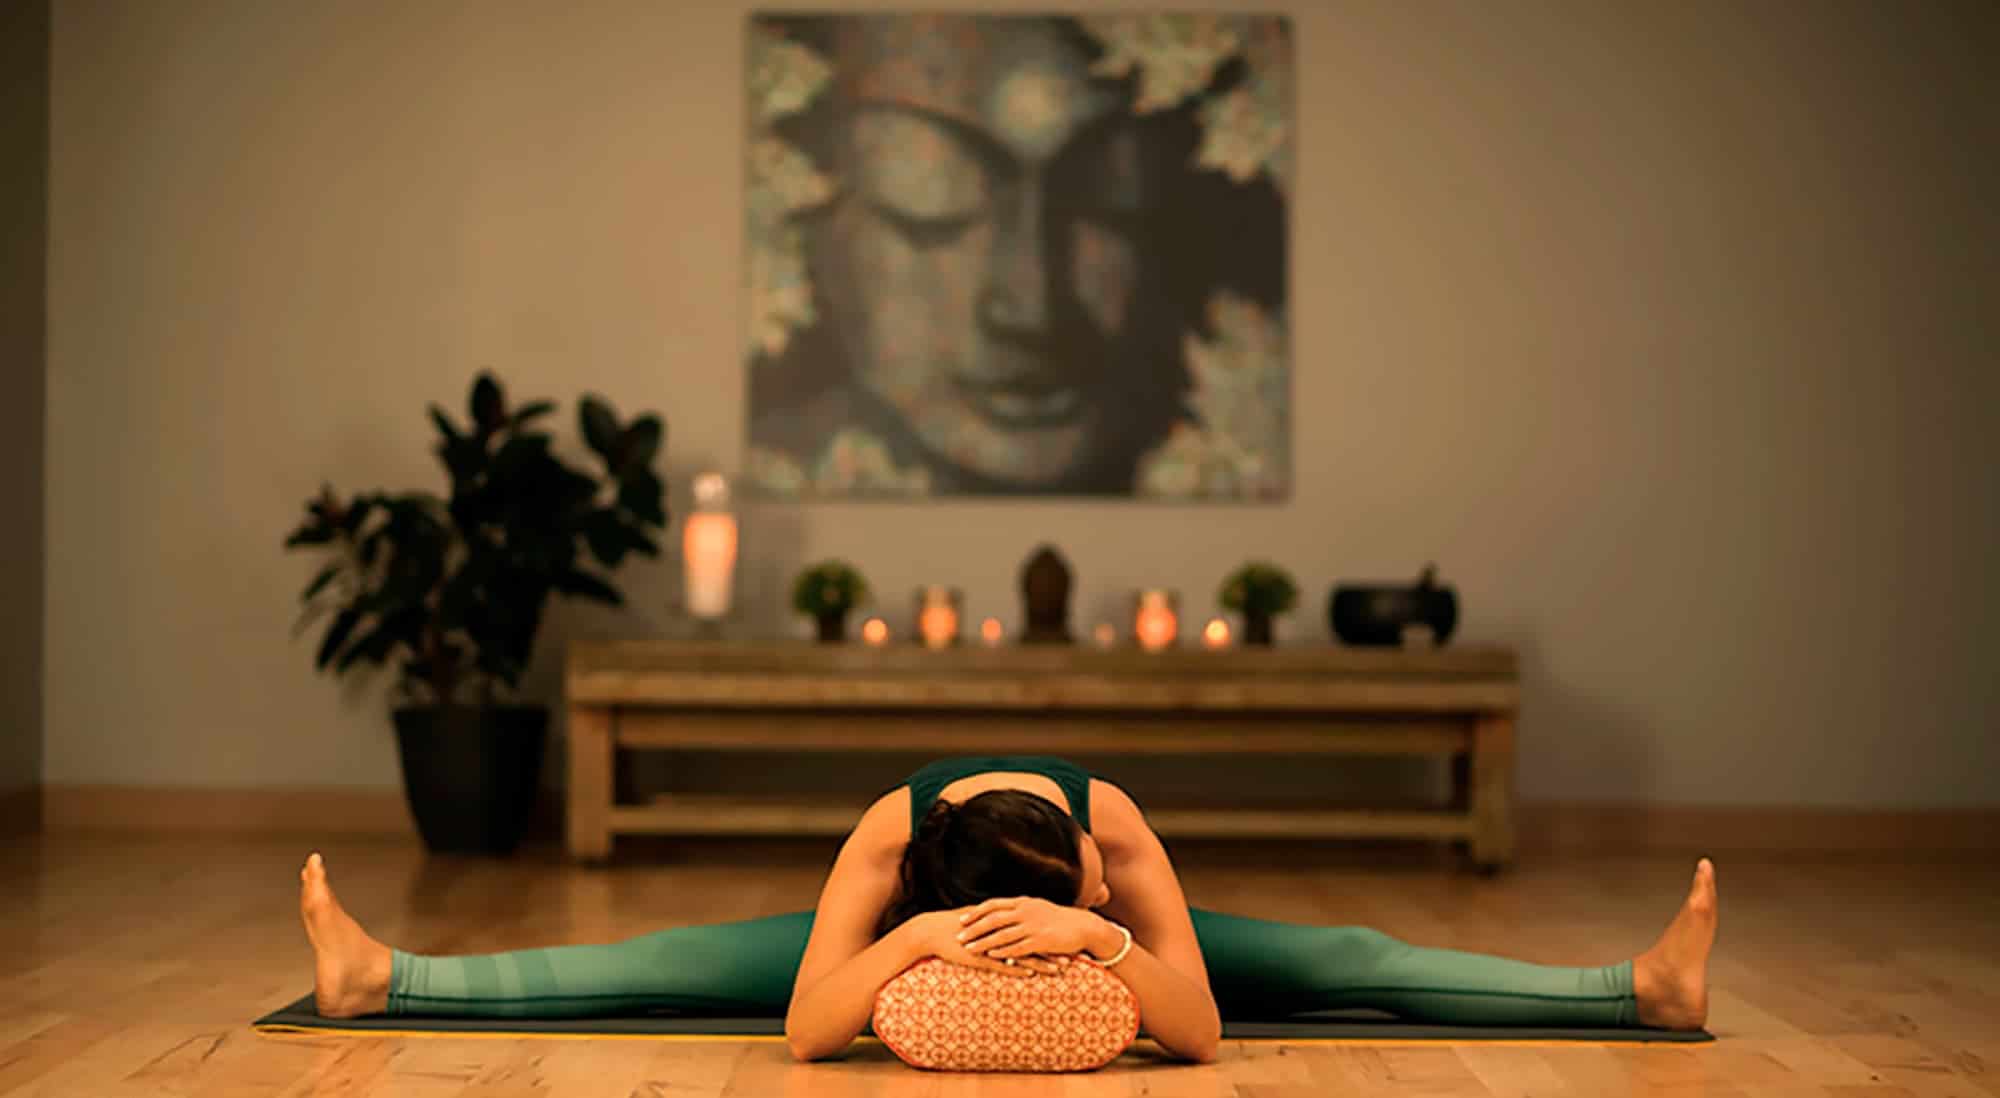 Медитация в домашних условиях: 5 простых шагов